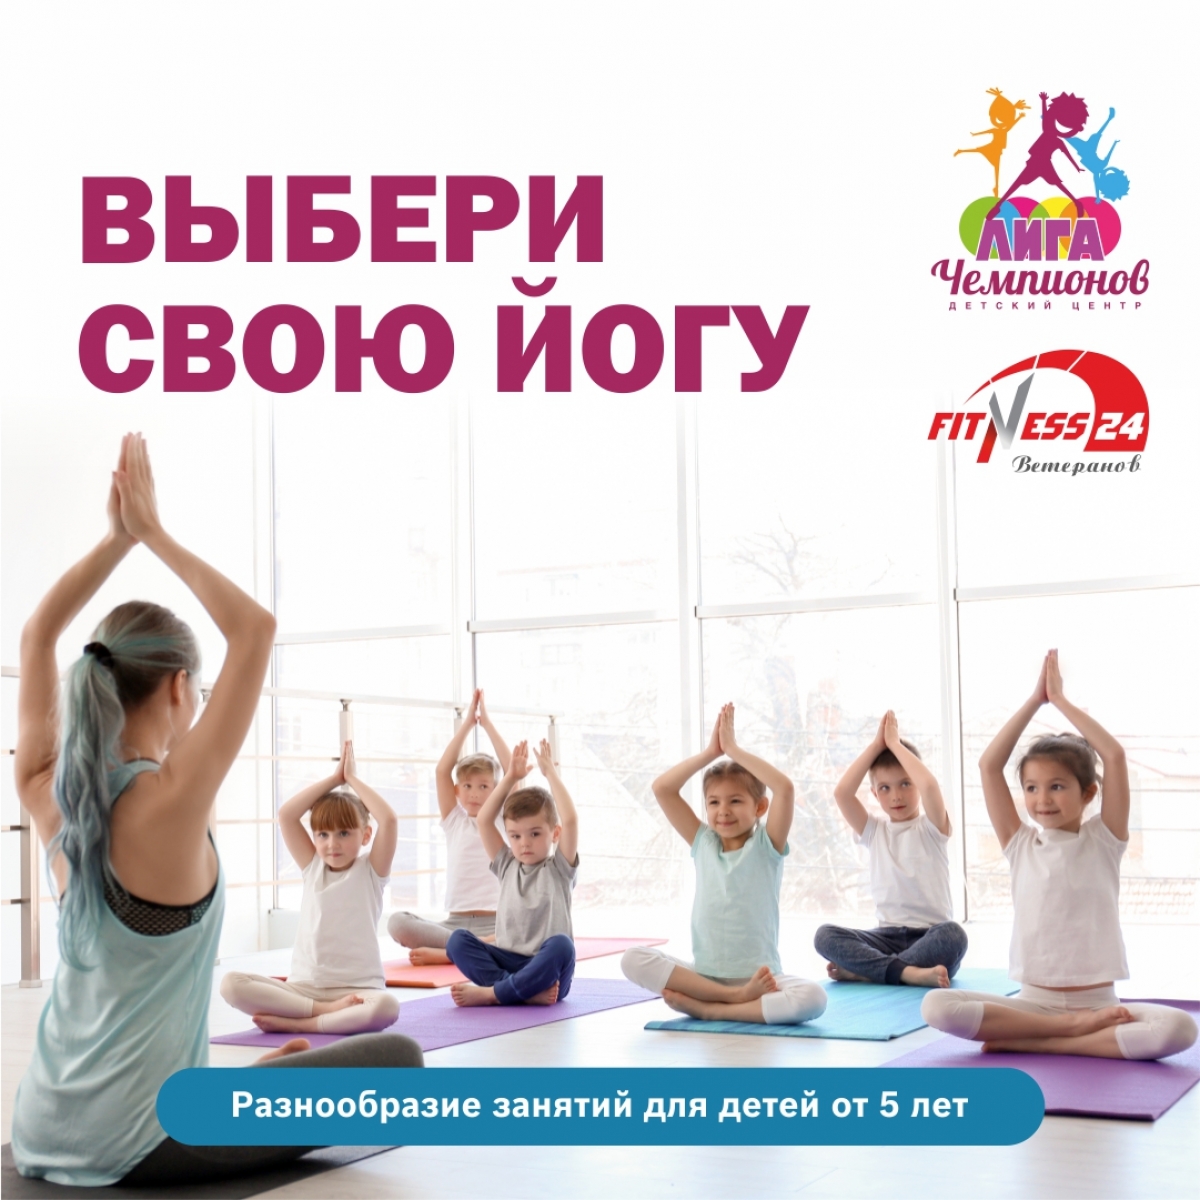 Йога для детей в Клубе Fitness24 Ветеранов